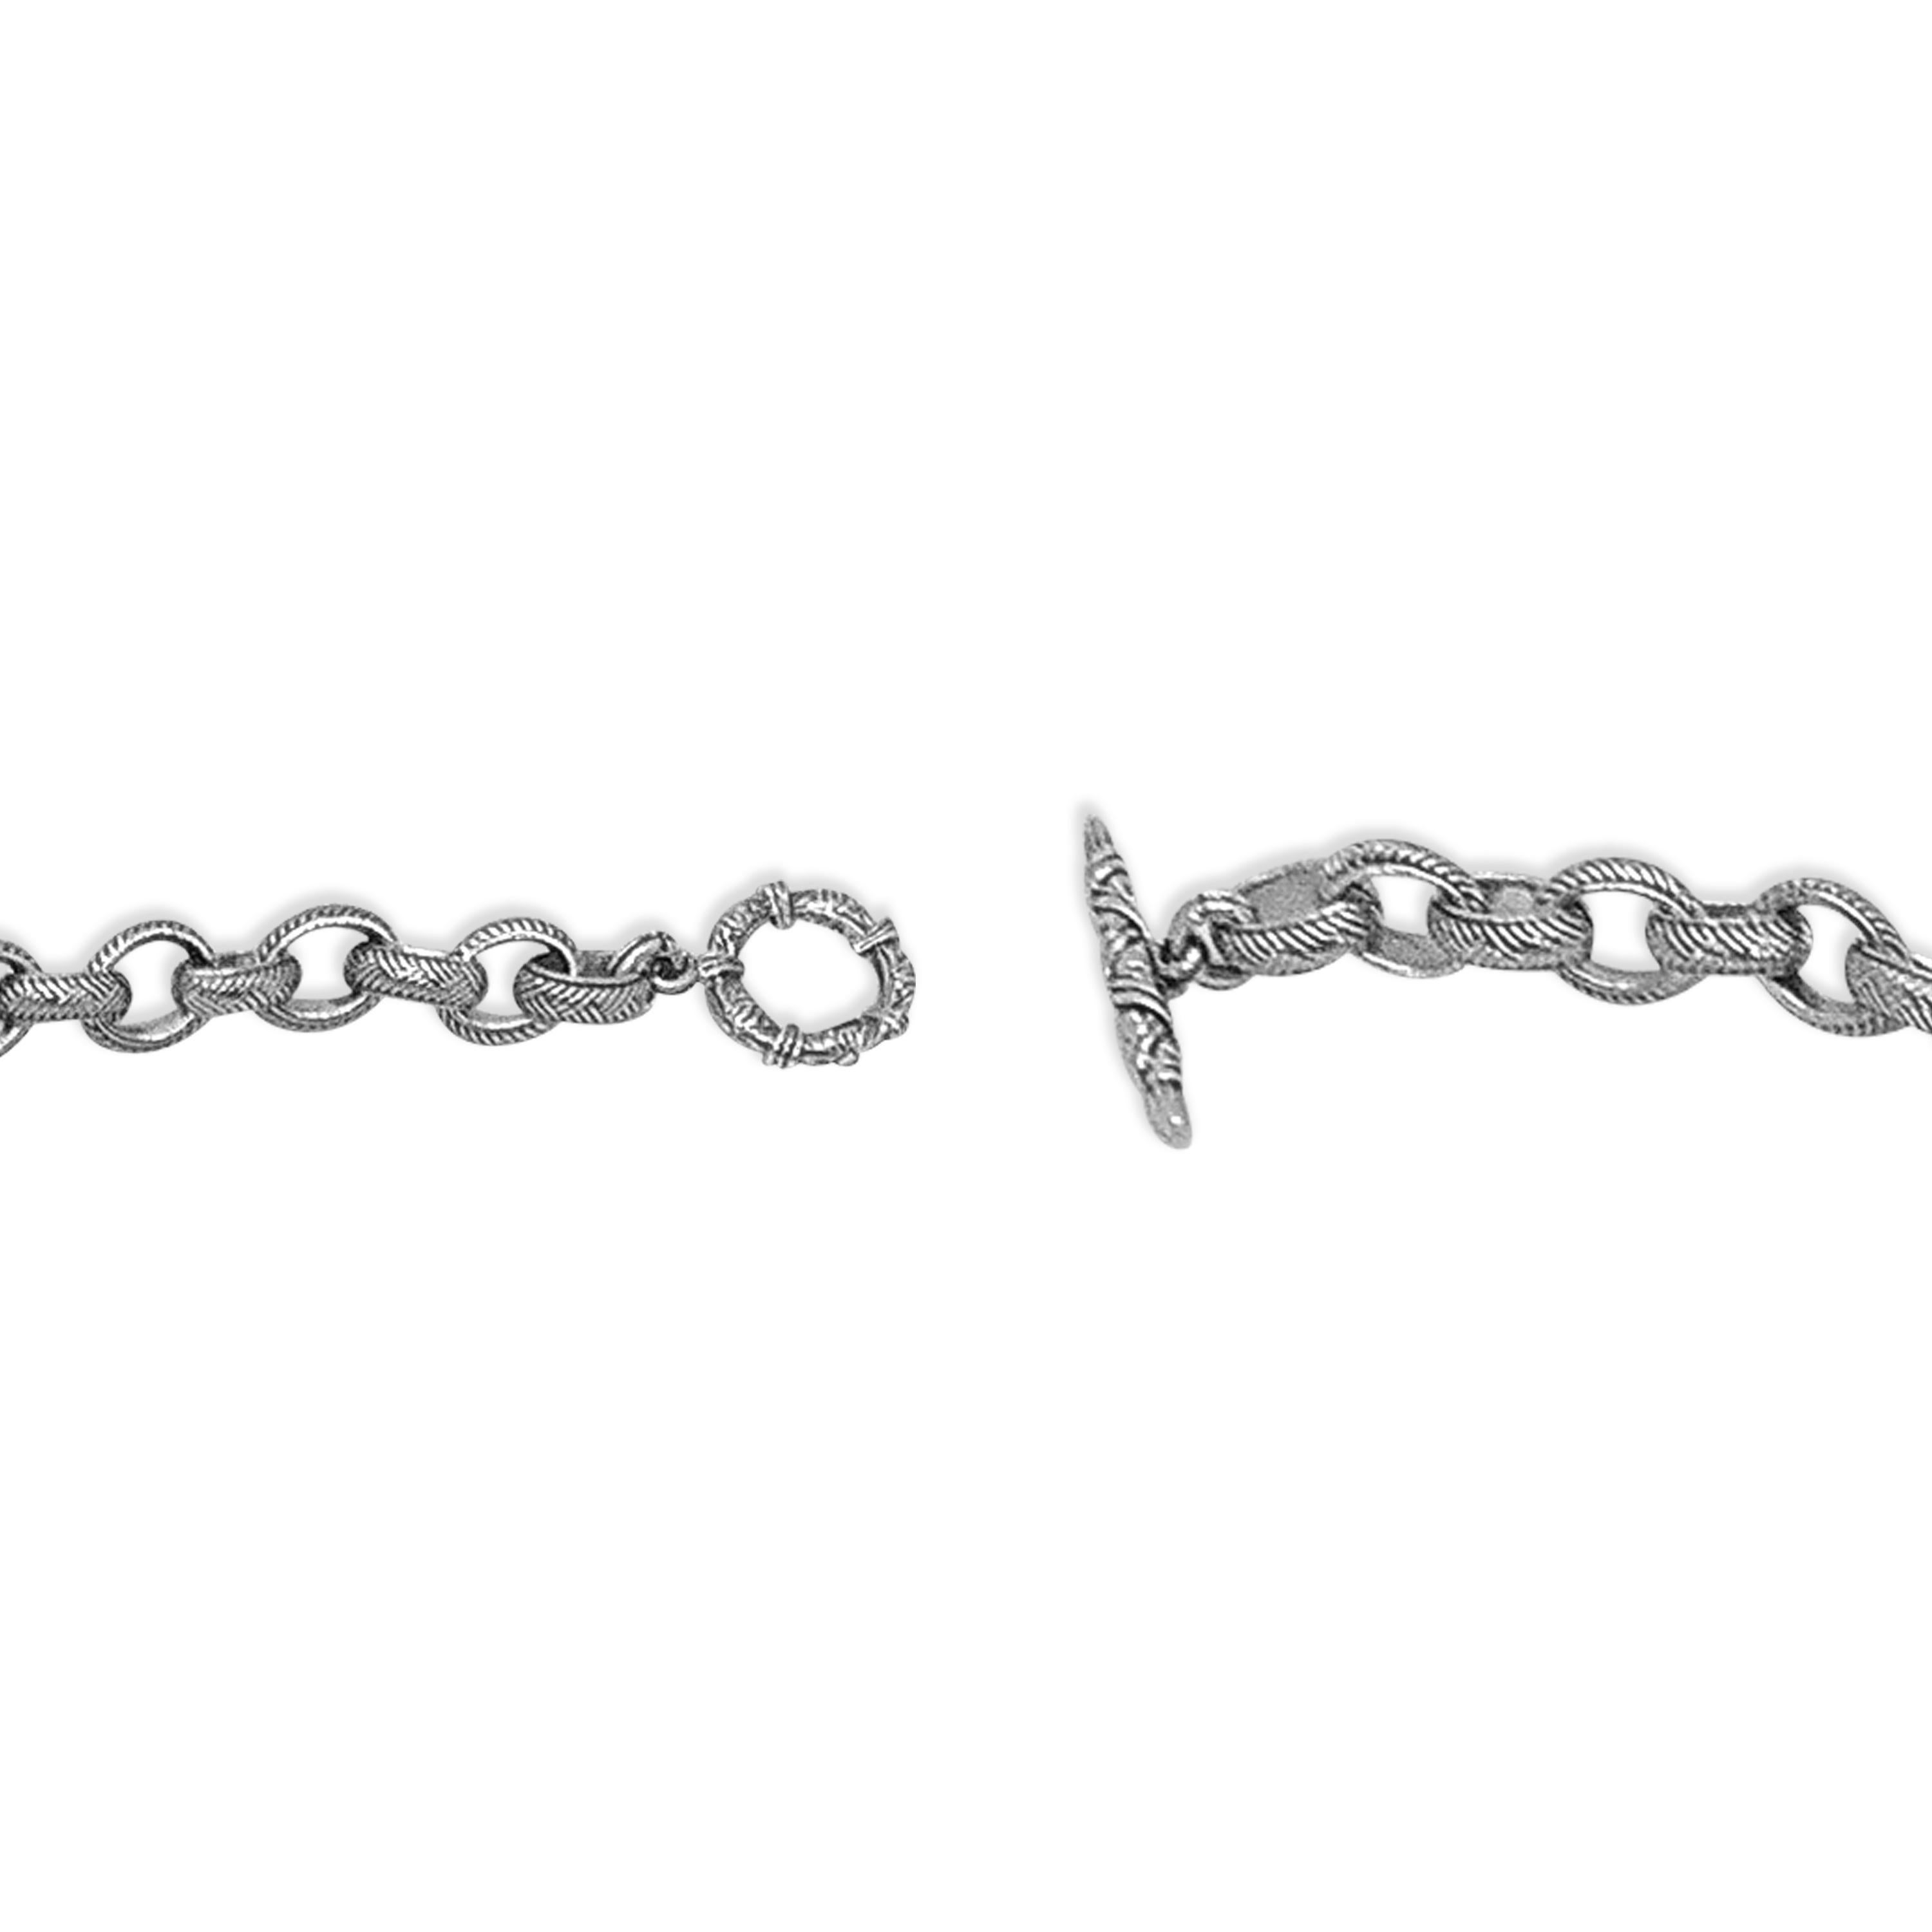 Ce collier à chaîne en argent gravé Signature Weave Linked Chain vous confère une élégance et une sophistication intemporelles. Chaque maillon de ce collier exquis est méticuleusement gravé de motifs complexes, mettant en valeur le savoir-faire